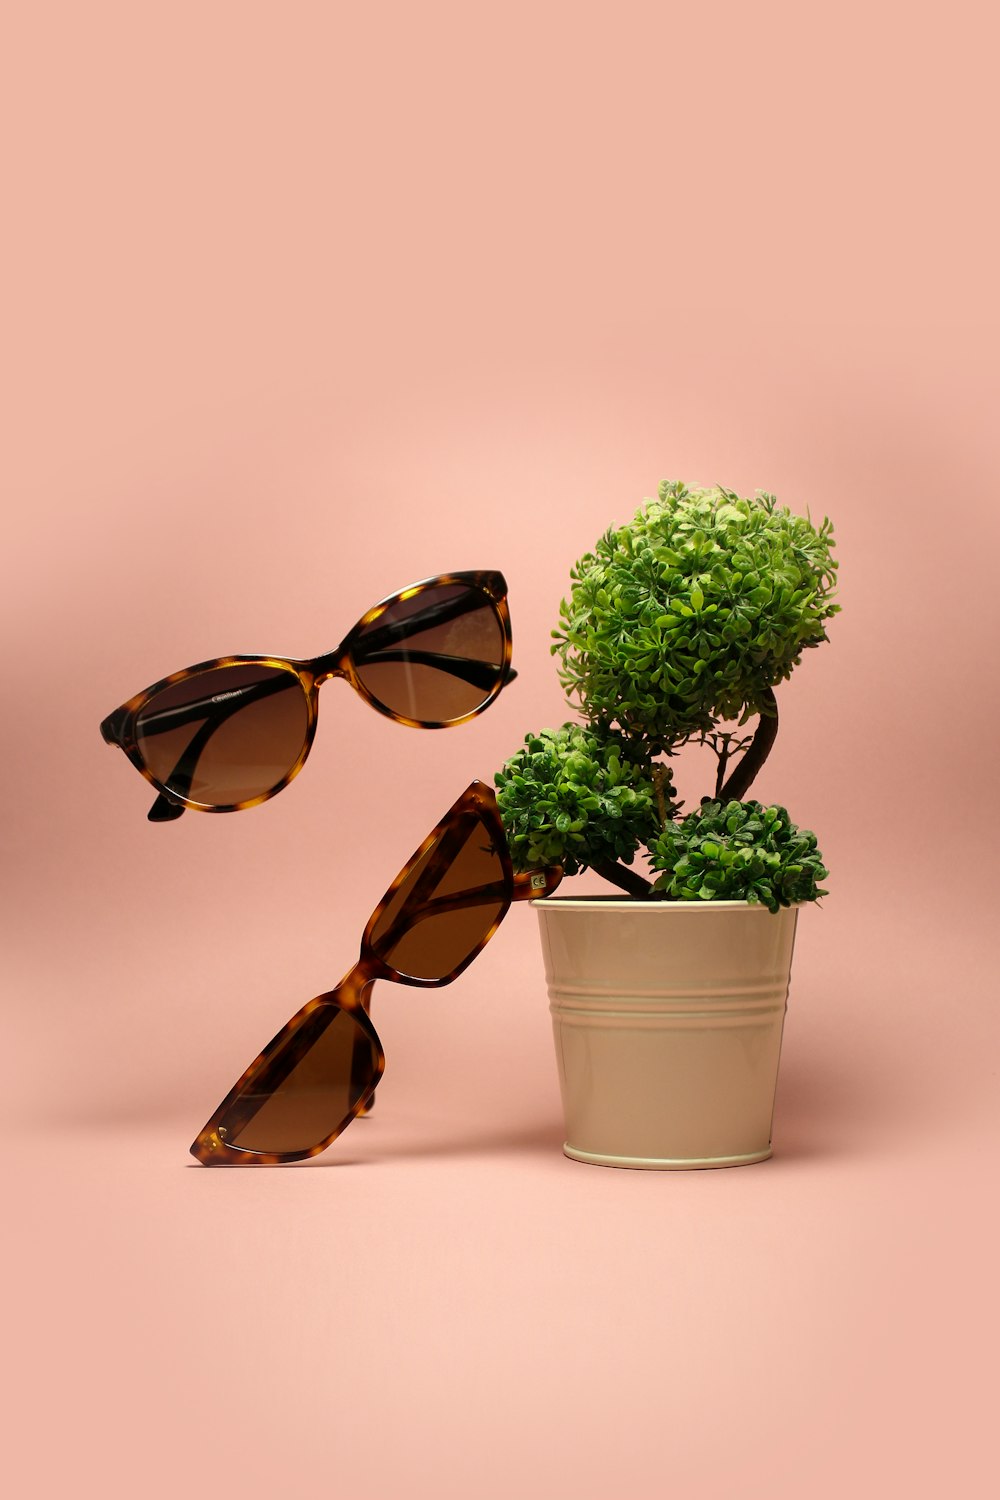 deux lunettes de soleil brunes à côté d’une plante à feuilles vertes